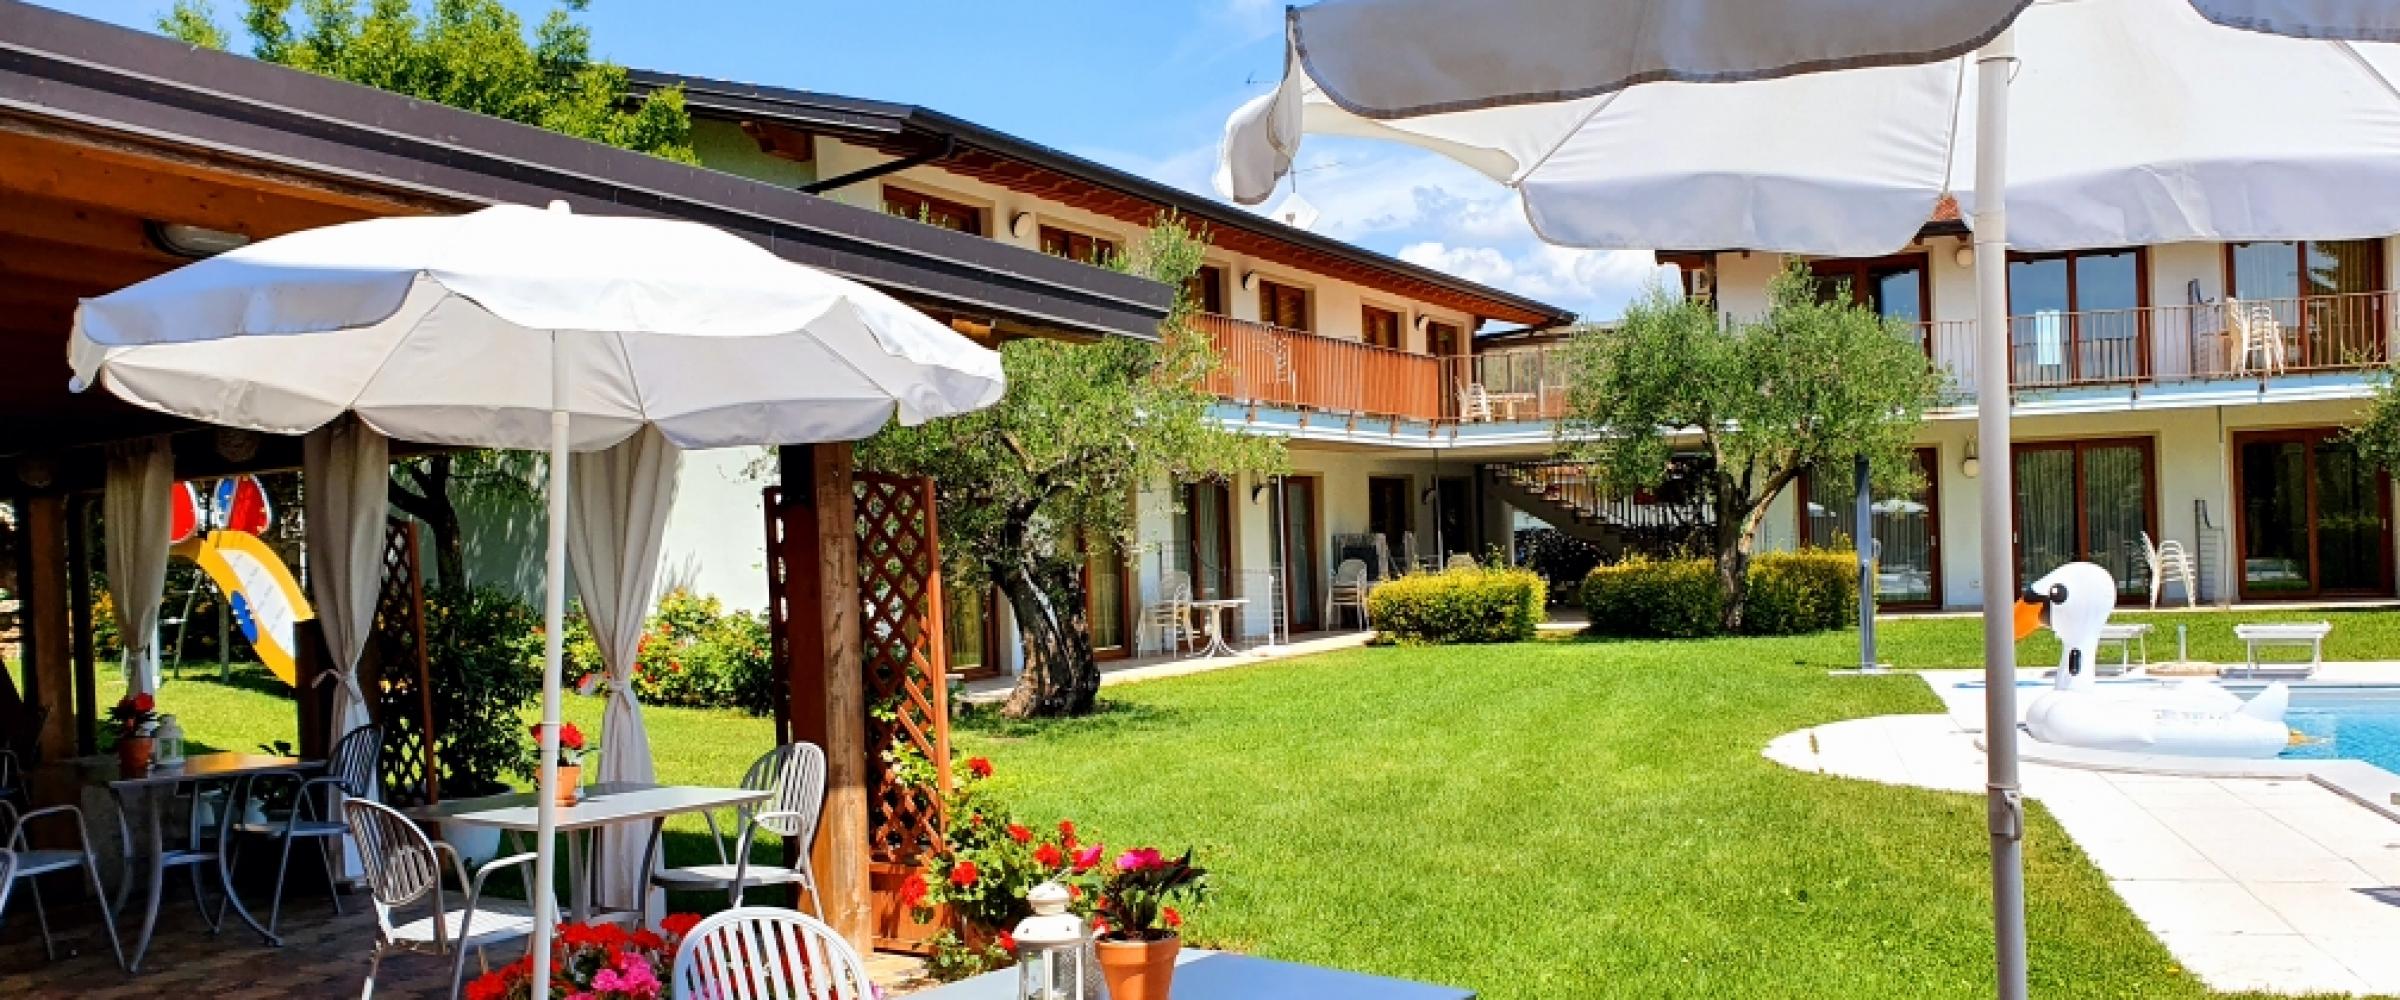 Appartamenti vacanza sul lago di Garda: scegliere Il Molino